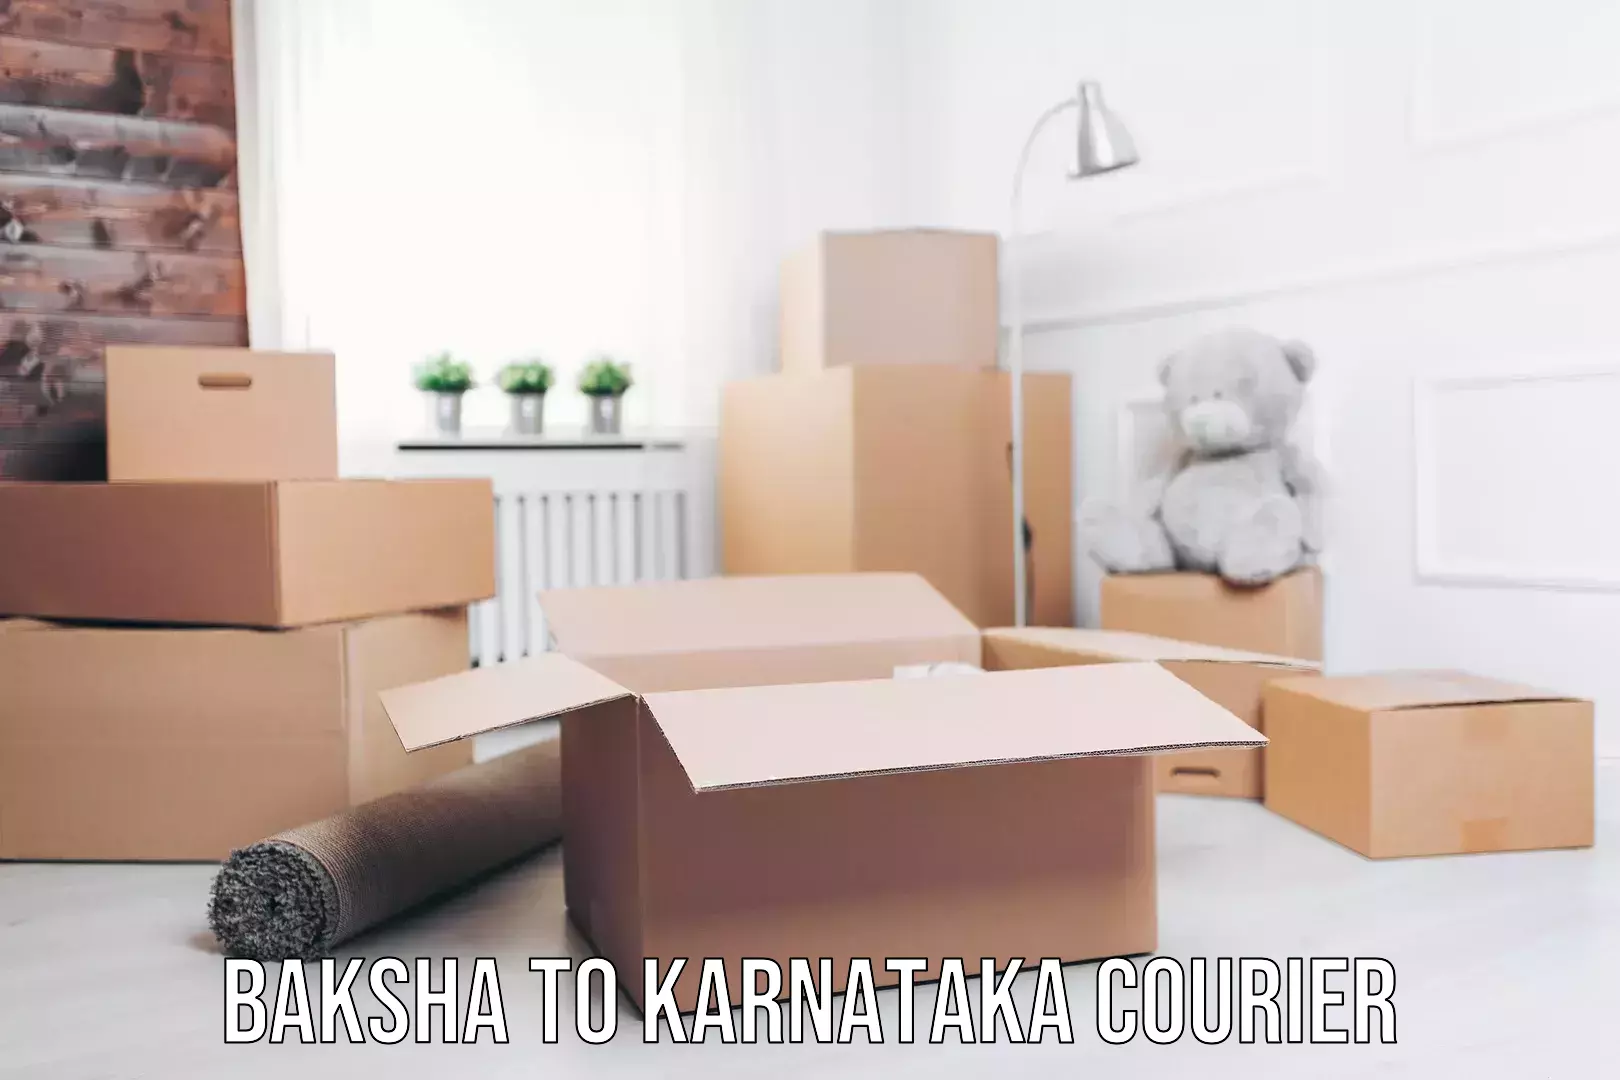 Courier app Baksha to Karnataka